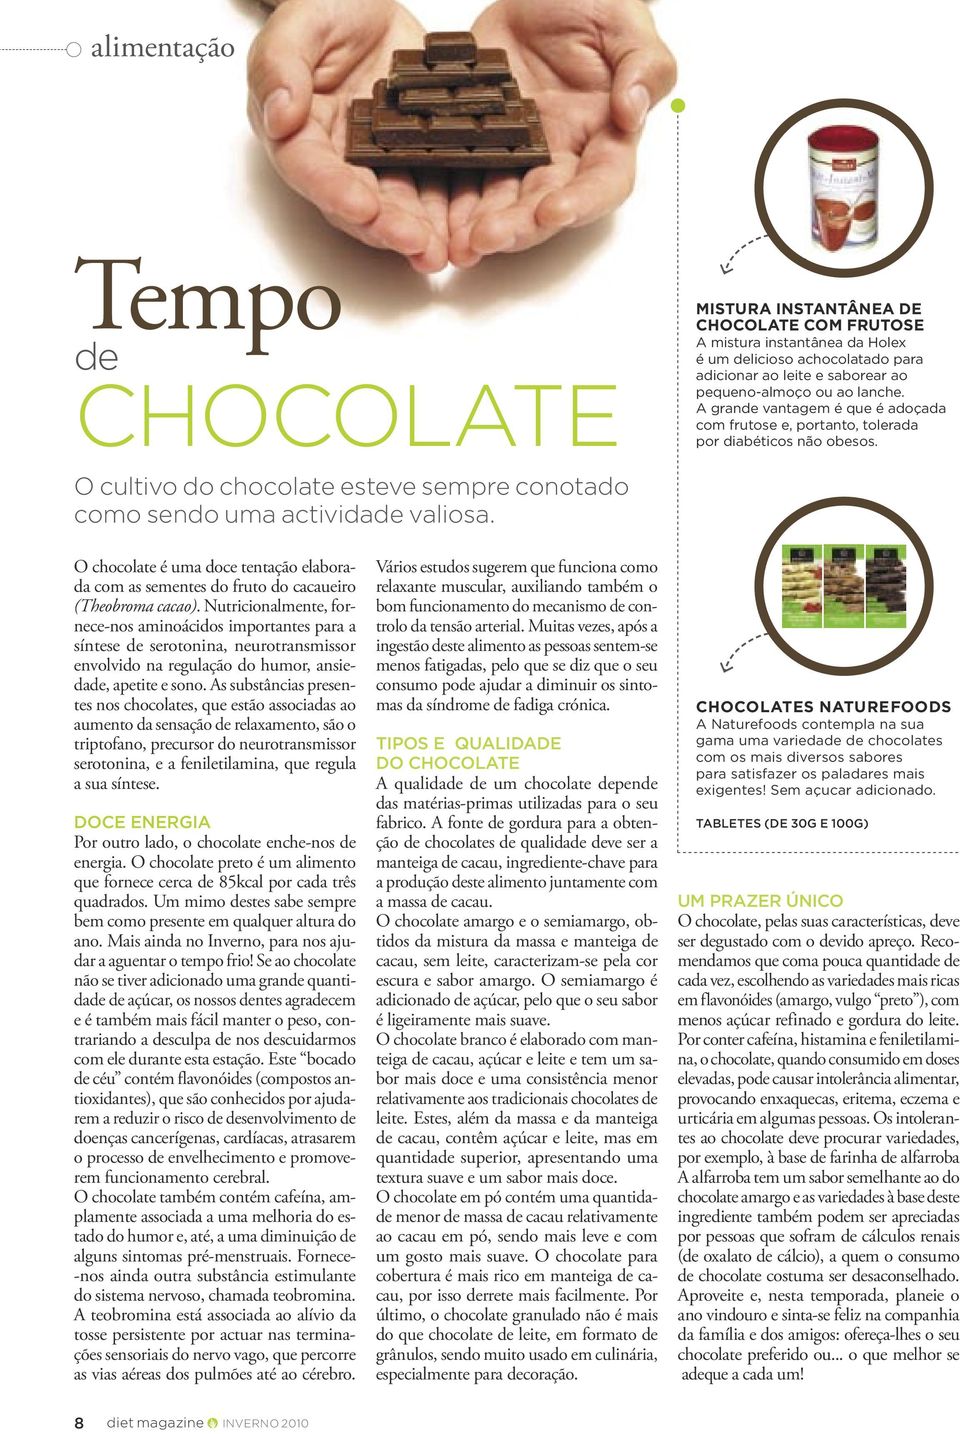 O chocolate é uma doce tentação elaborada com as sementes do fruto do cacaueiro (Theobroma cacao).